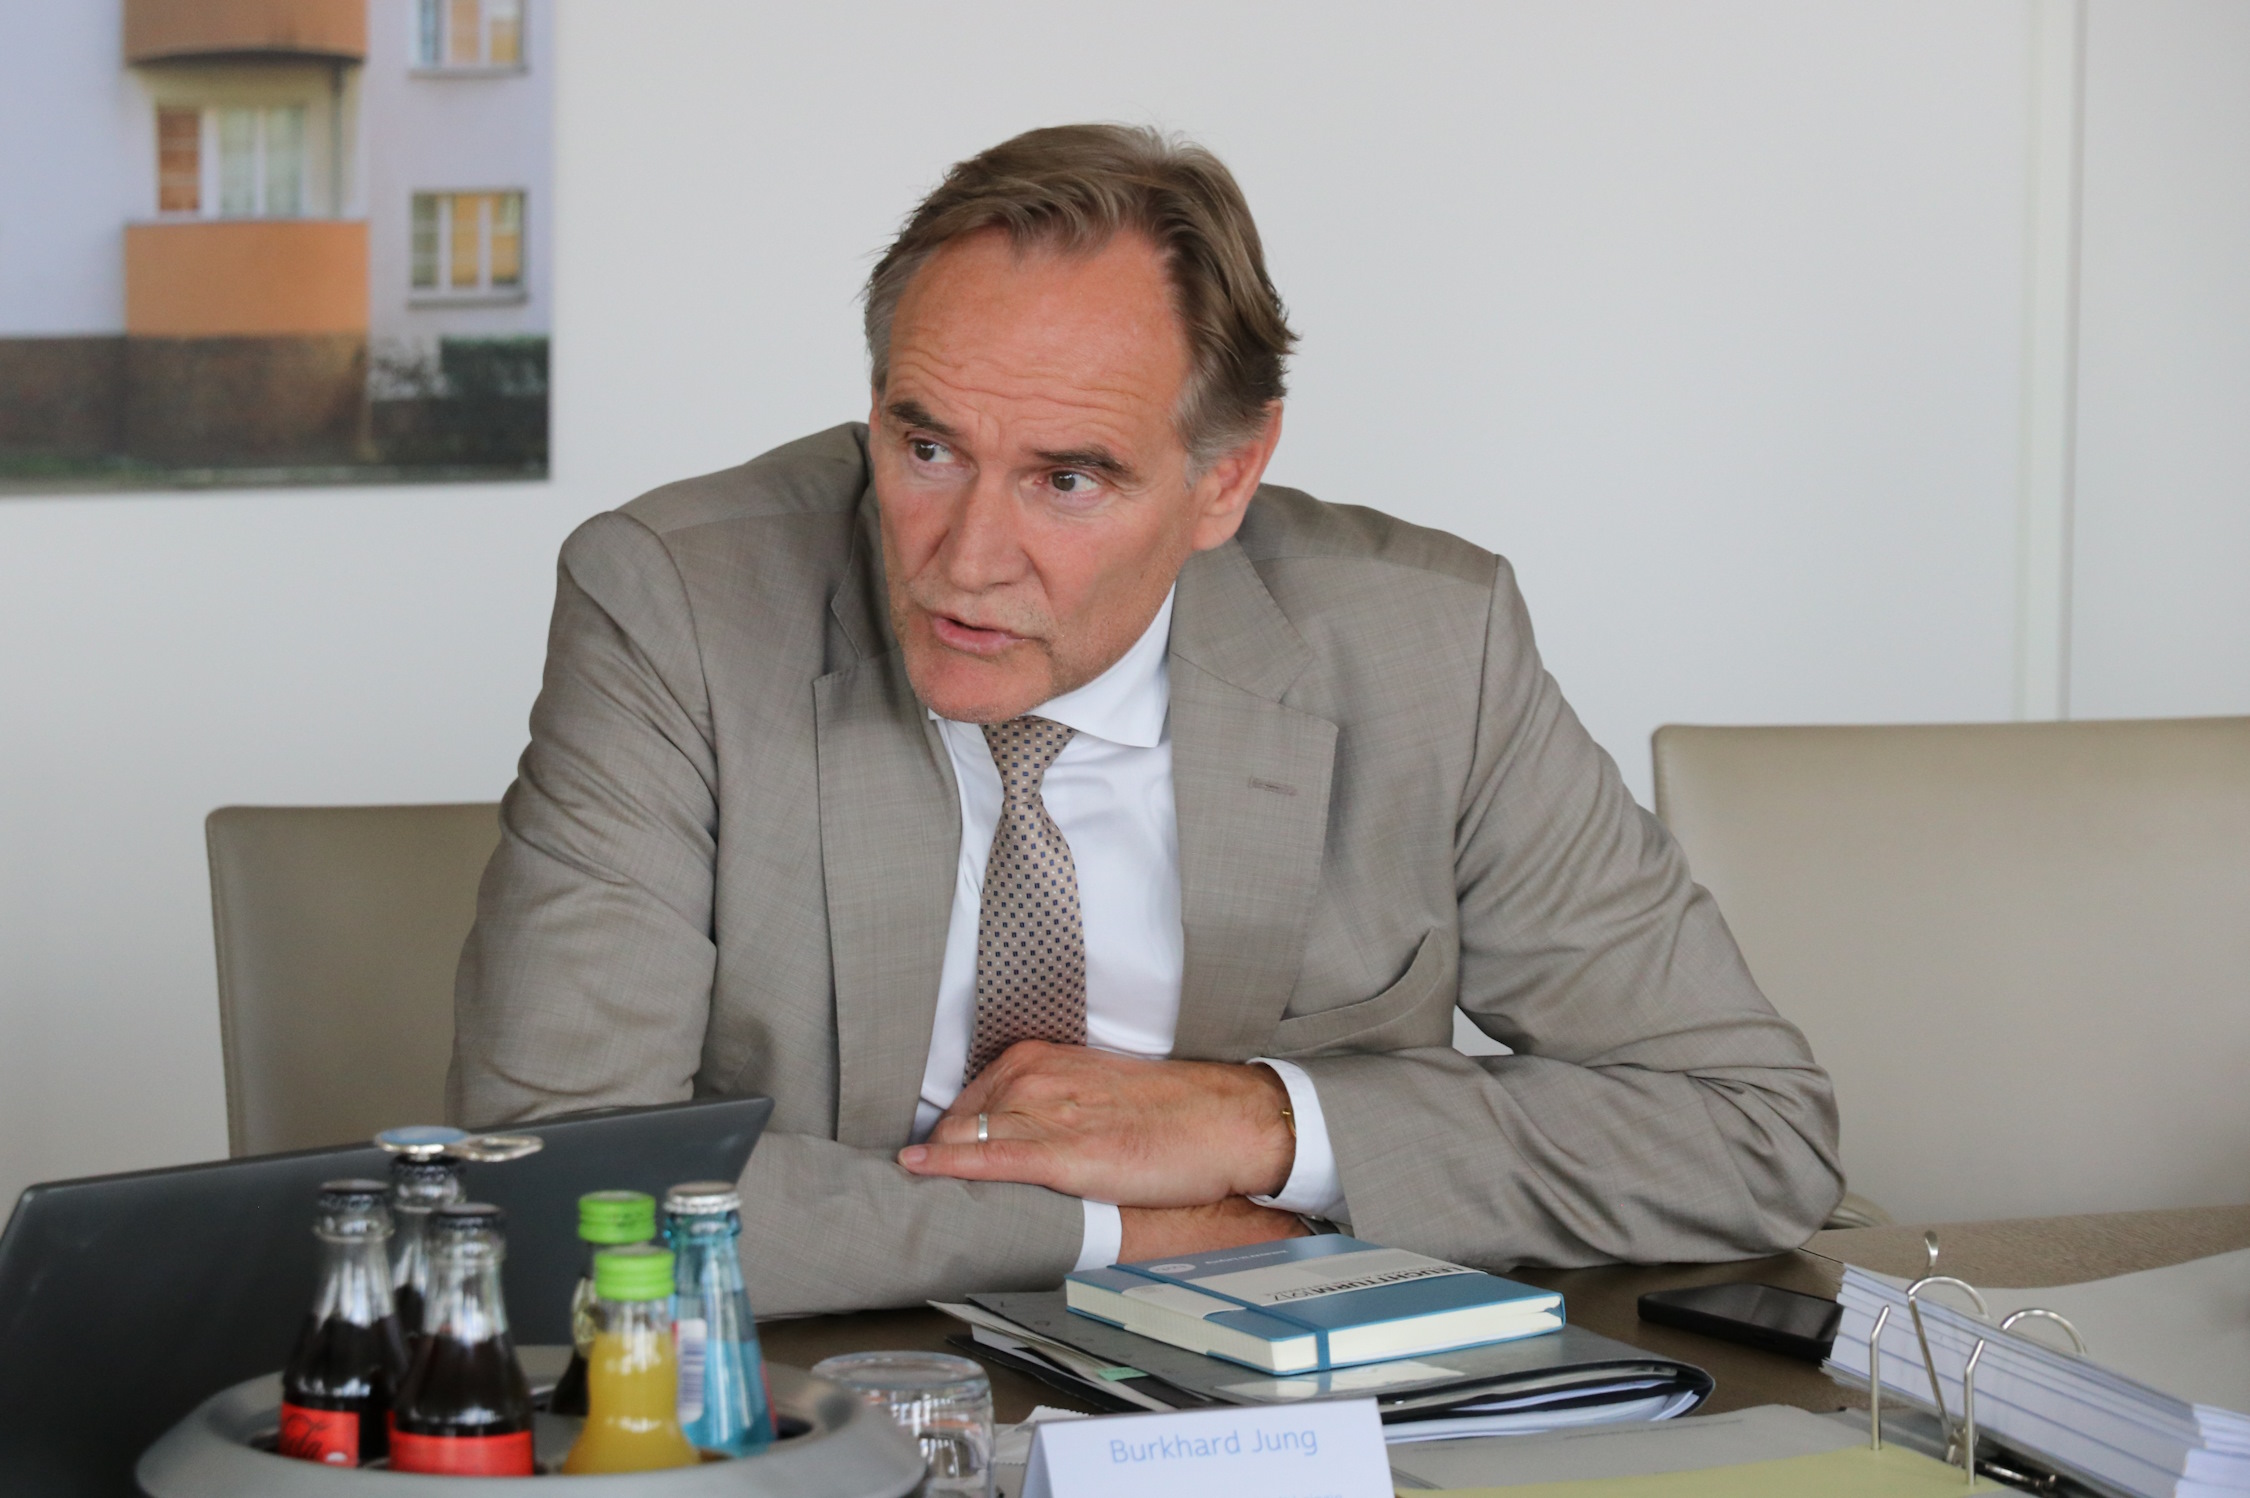 OBM Burkhard Jung bei der LWB-Pressekonferenz am 6. Juli. Foto: Sabine Eicker